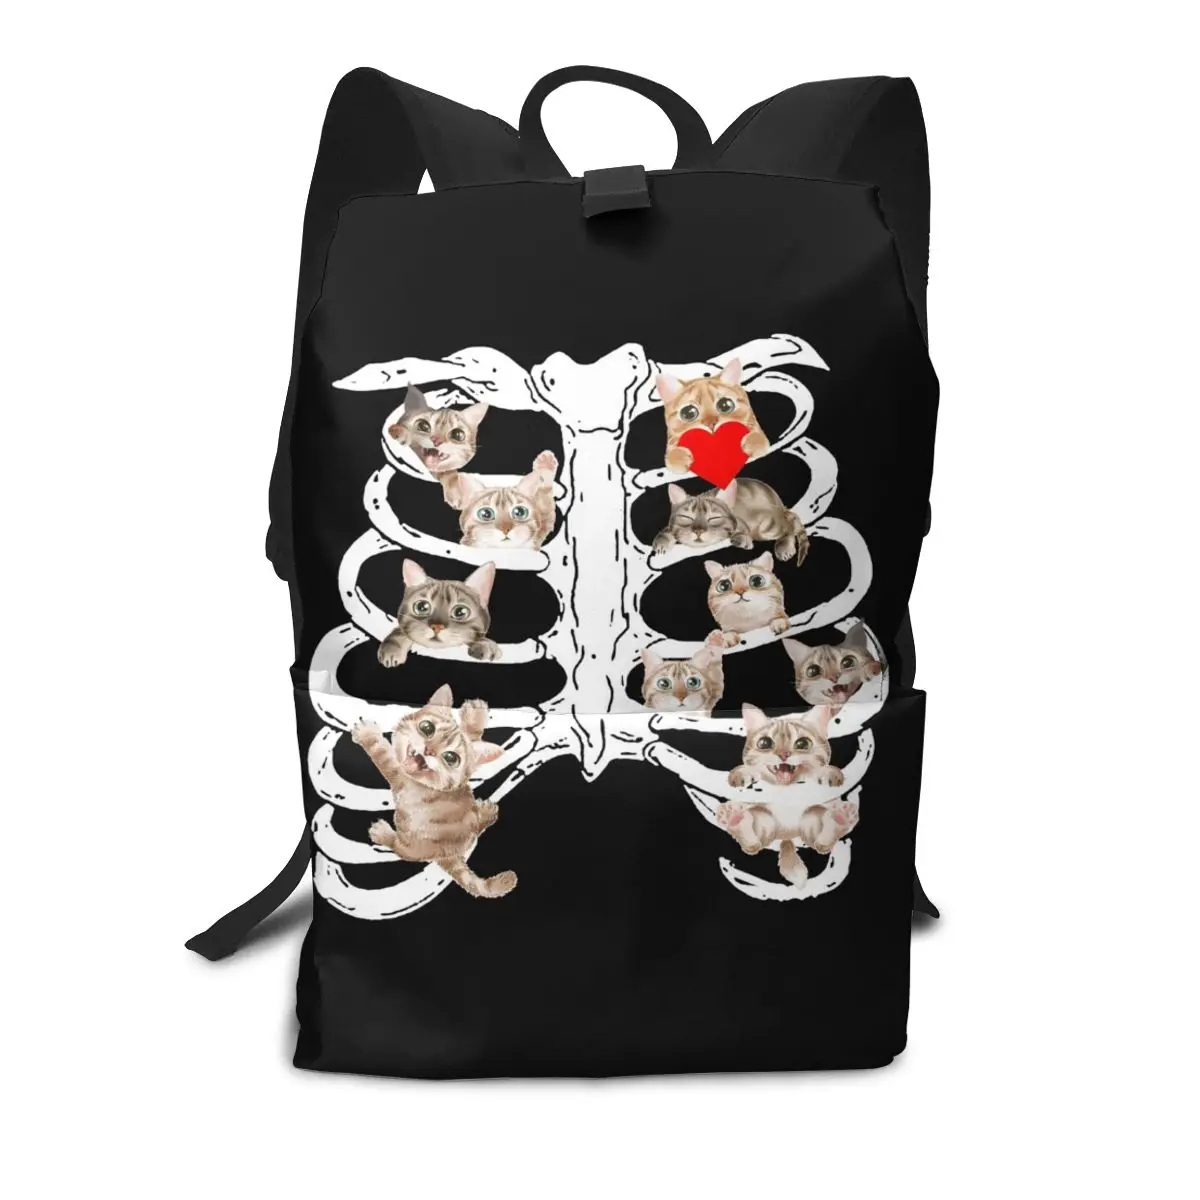 

Рюкзак с рисунком кошки, скелета, Хэллоуина, сердца, красное сердце, Стиль Love, полиэфирный рюкзак для университета, Молодежные большие сумки